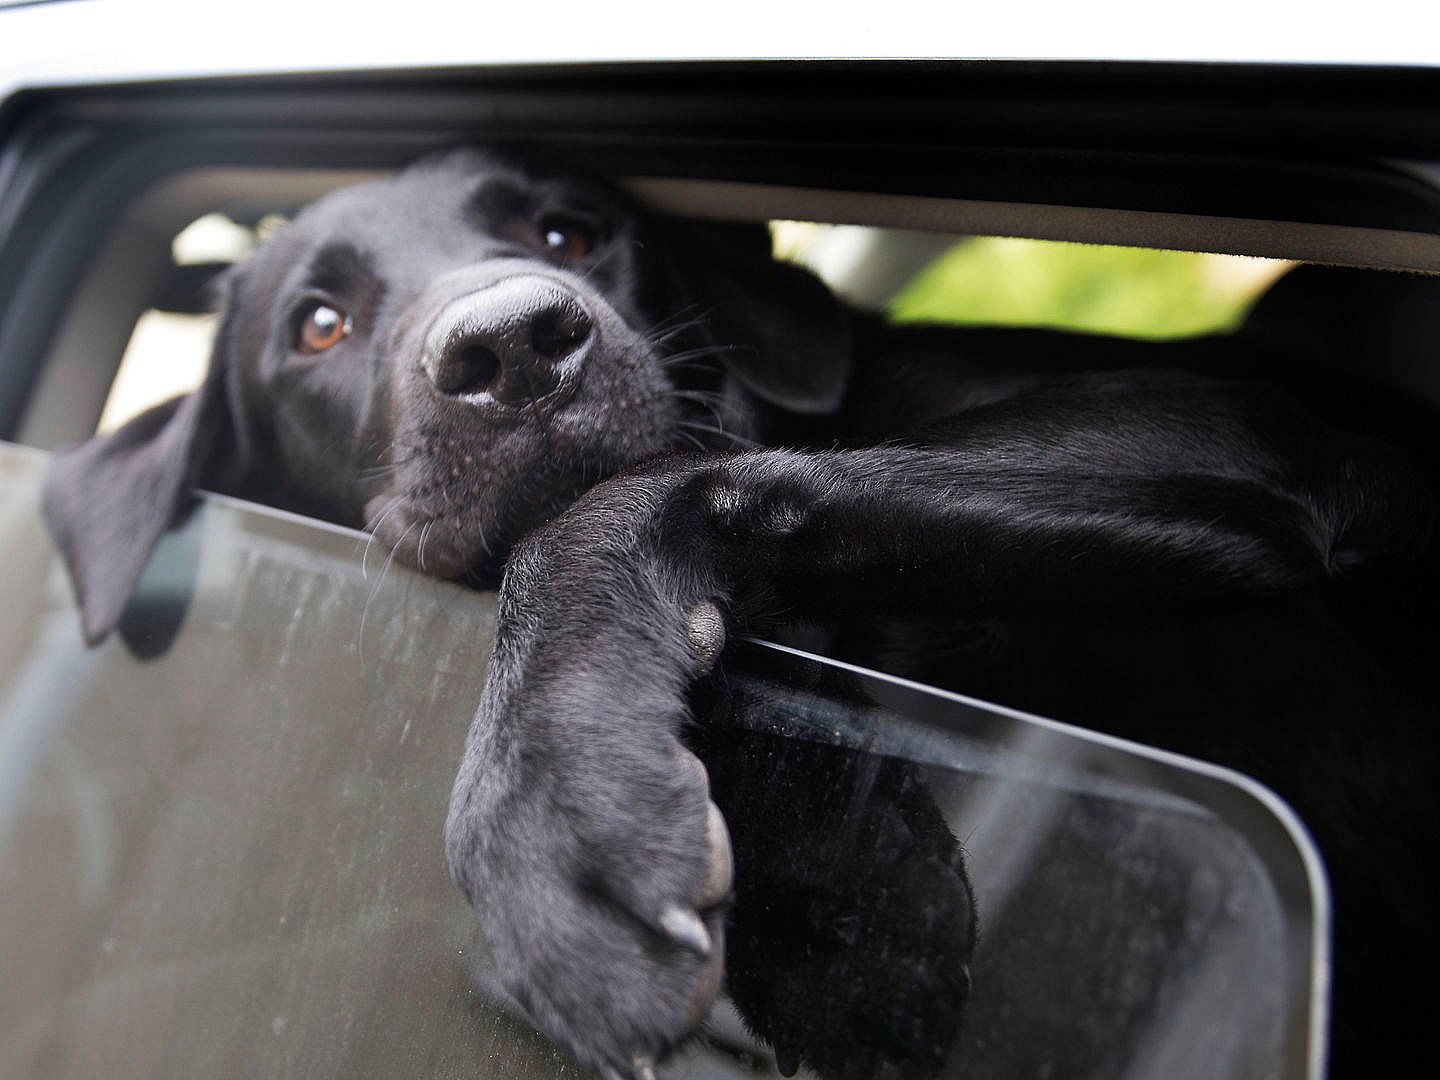 Flere hunde i bliver efterladt i varme biler | TV 2 Kosmopol